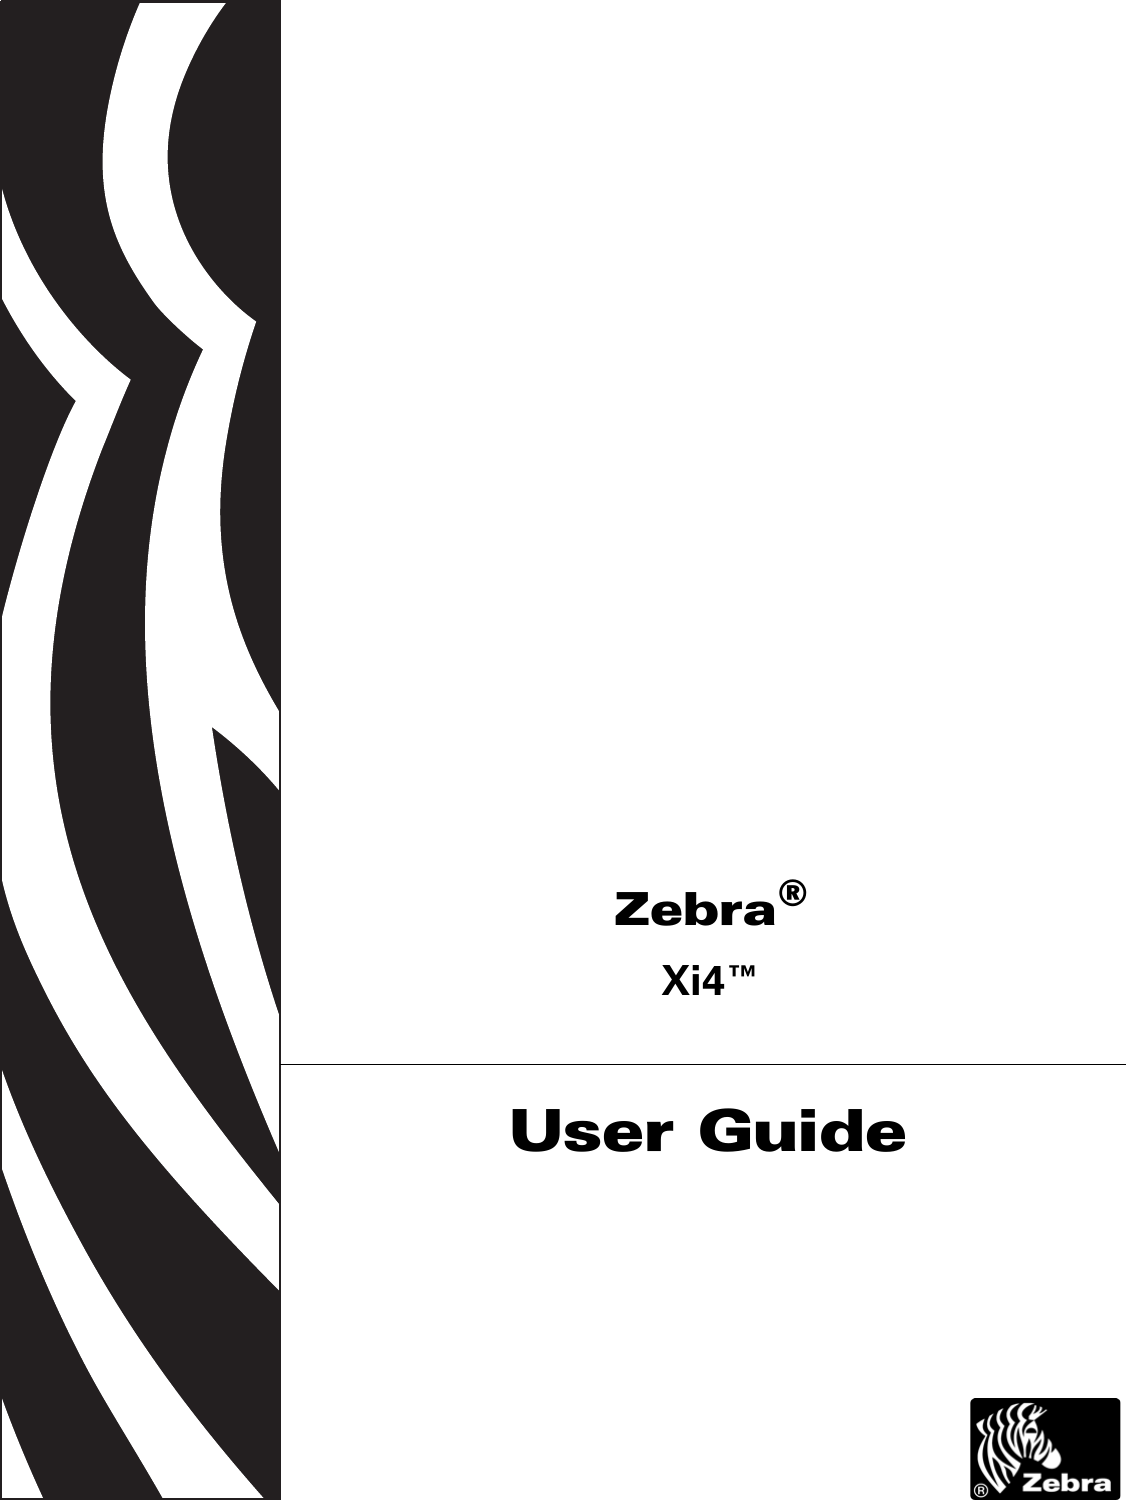  Zebra®Xi4™User Guide